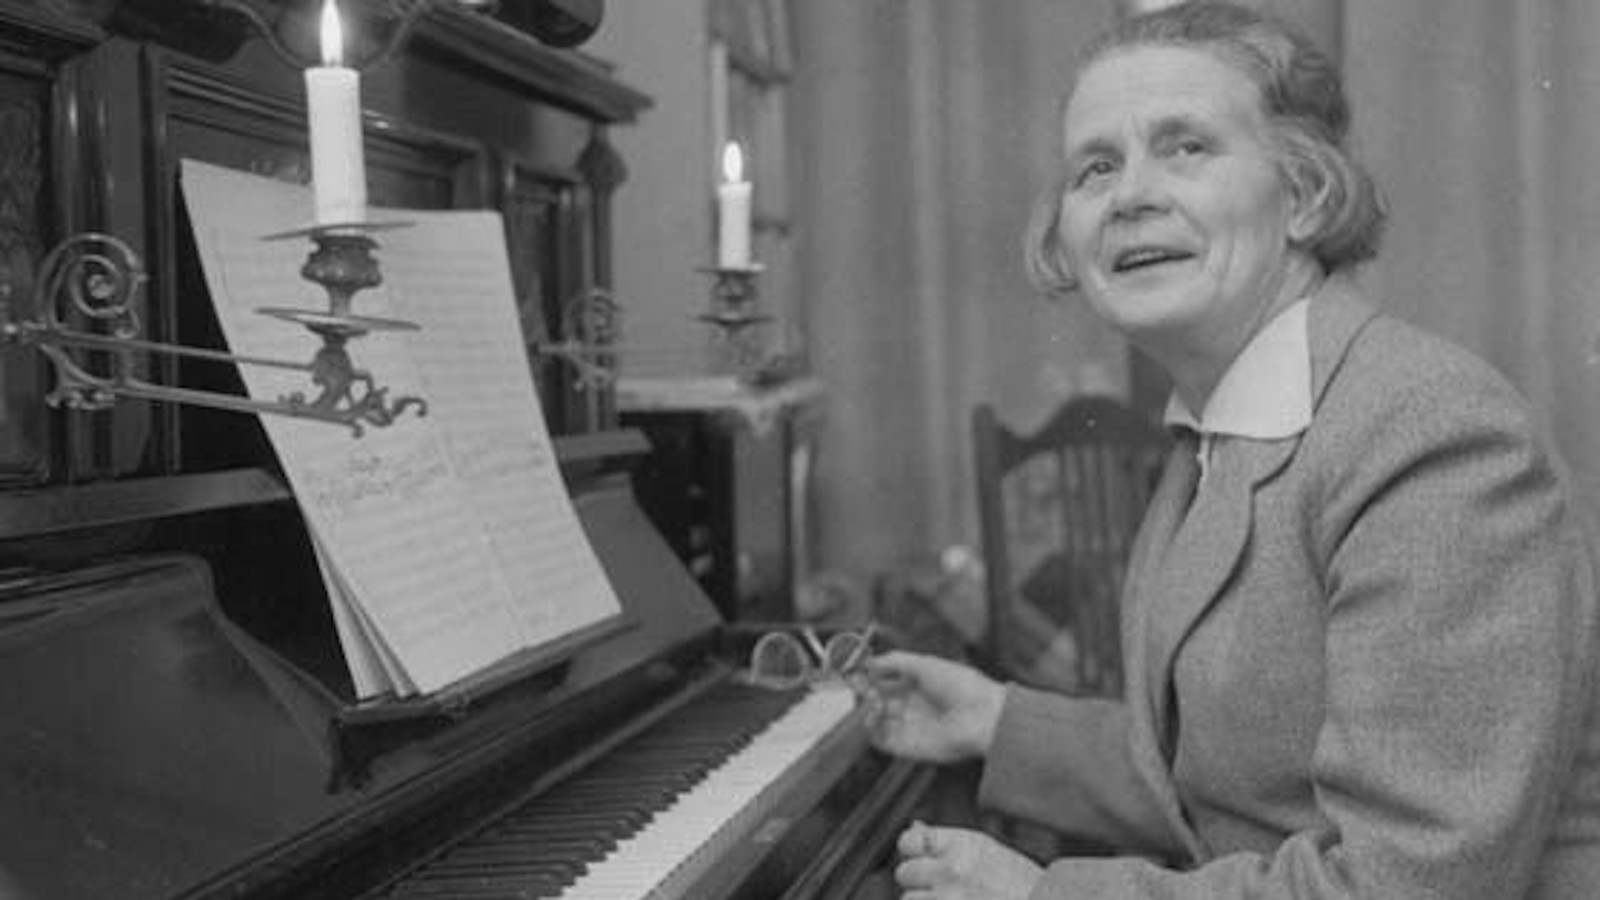 Kuvassa on Helvi Leiviskä vanhanaikaisen pianon ääressä pukeutuneena jakkuun.  Kuva on musta-valkoinen.